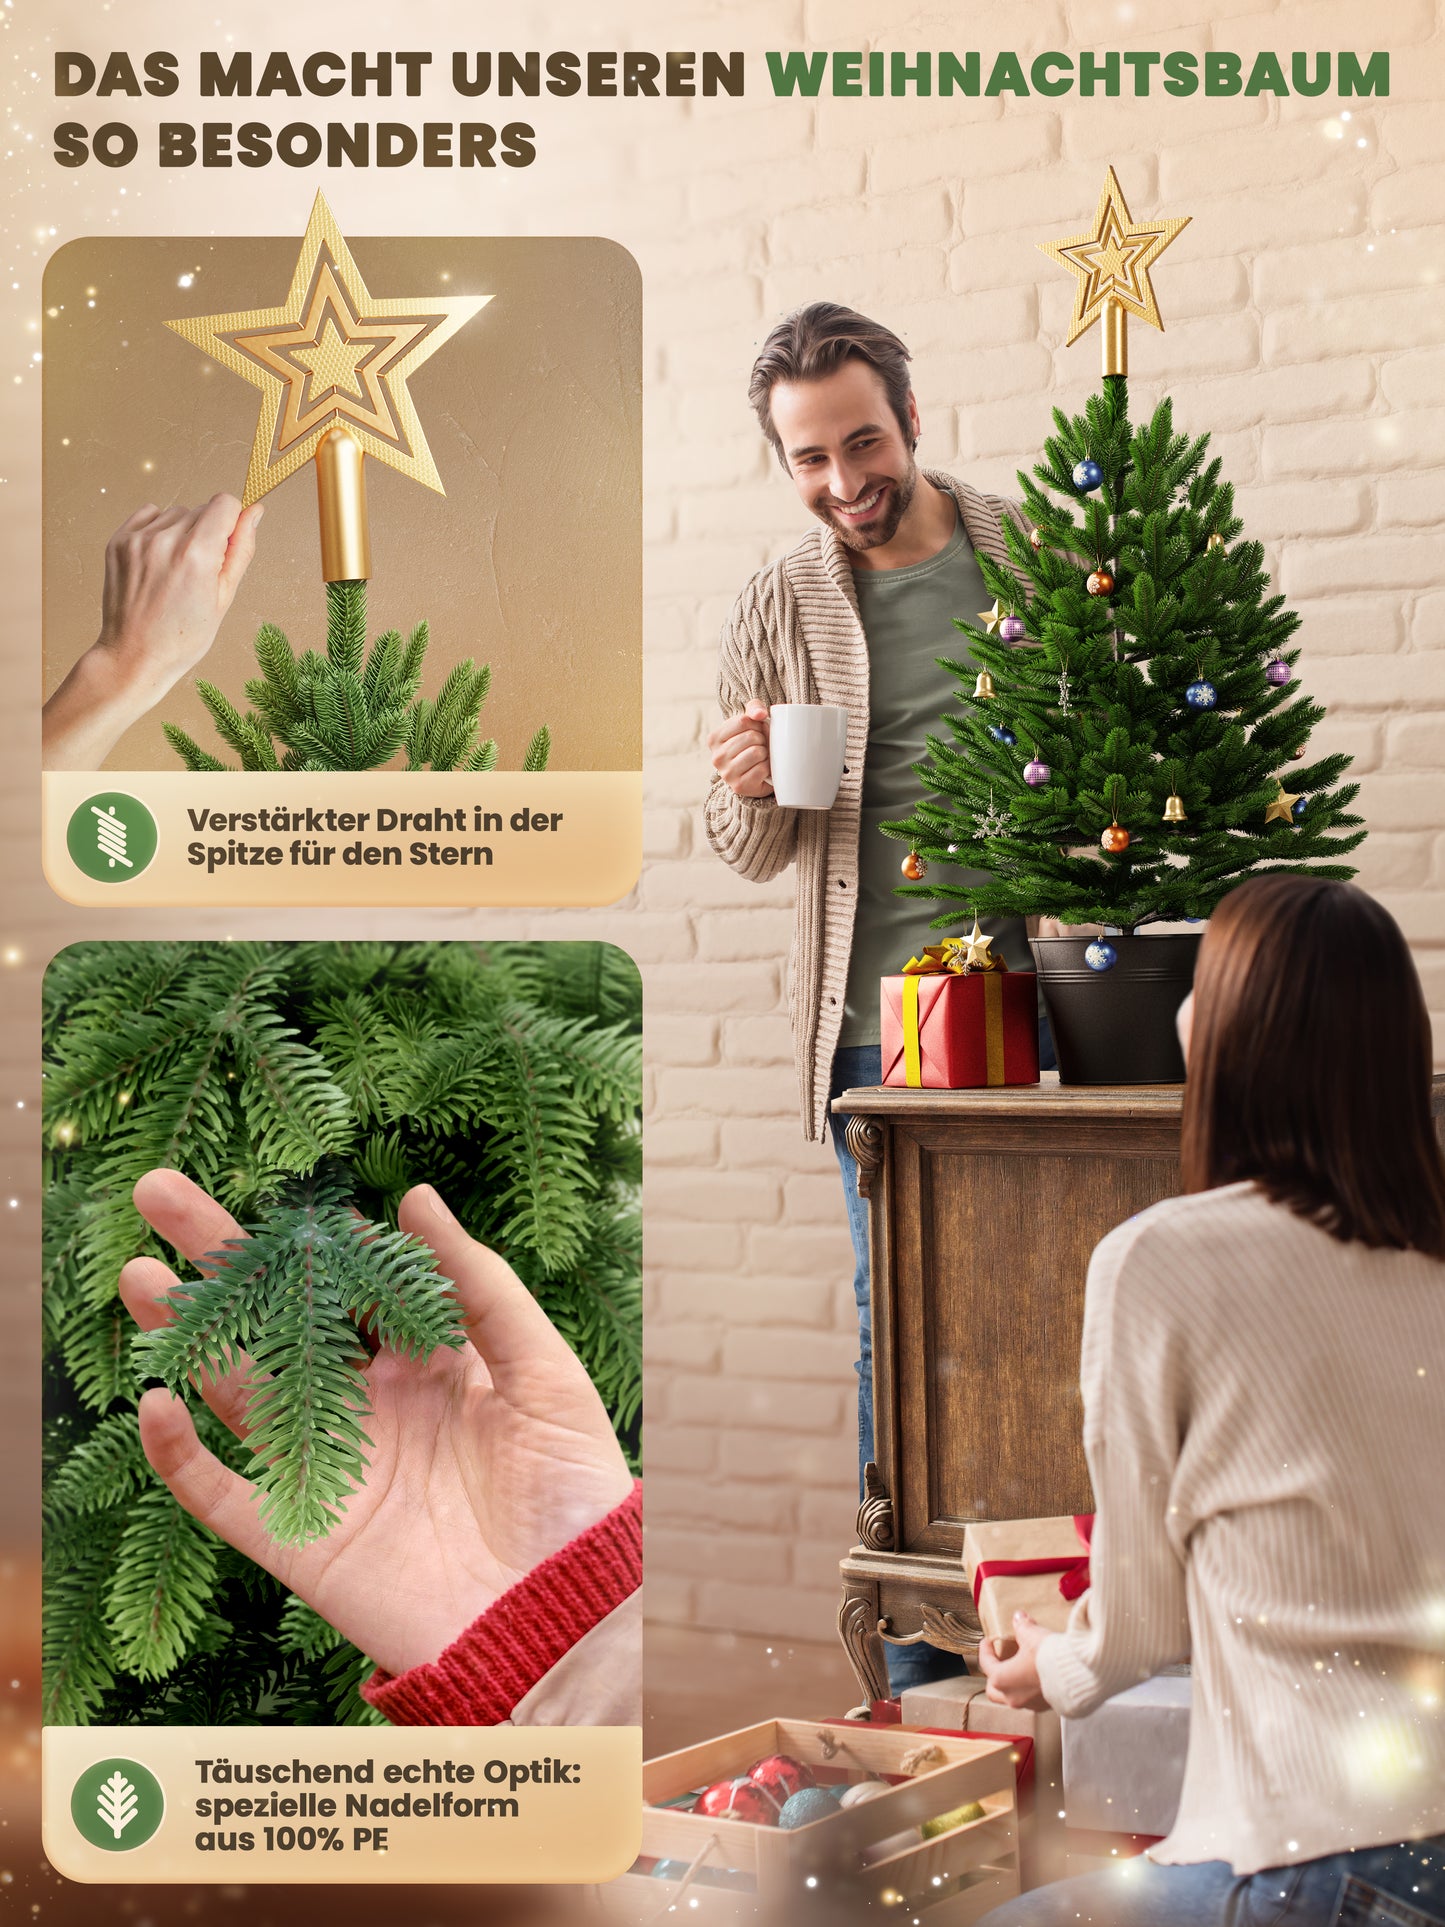 ArtiTree® Künstlicher Weihnachtsbaum - Premium Tanne im Topf 80cm